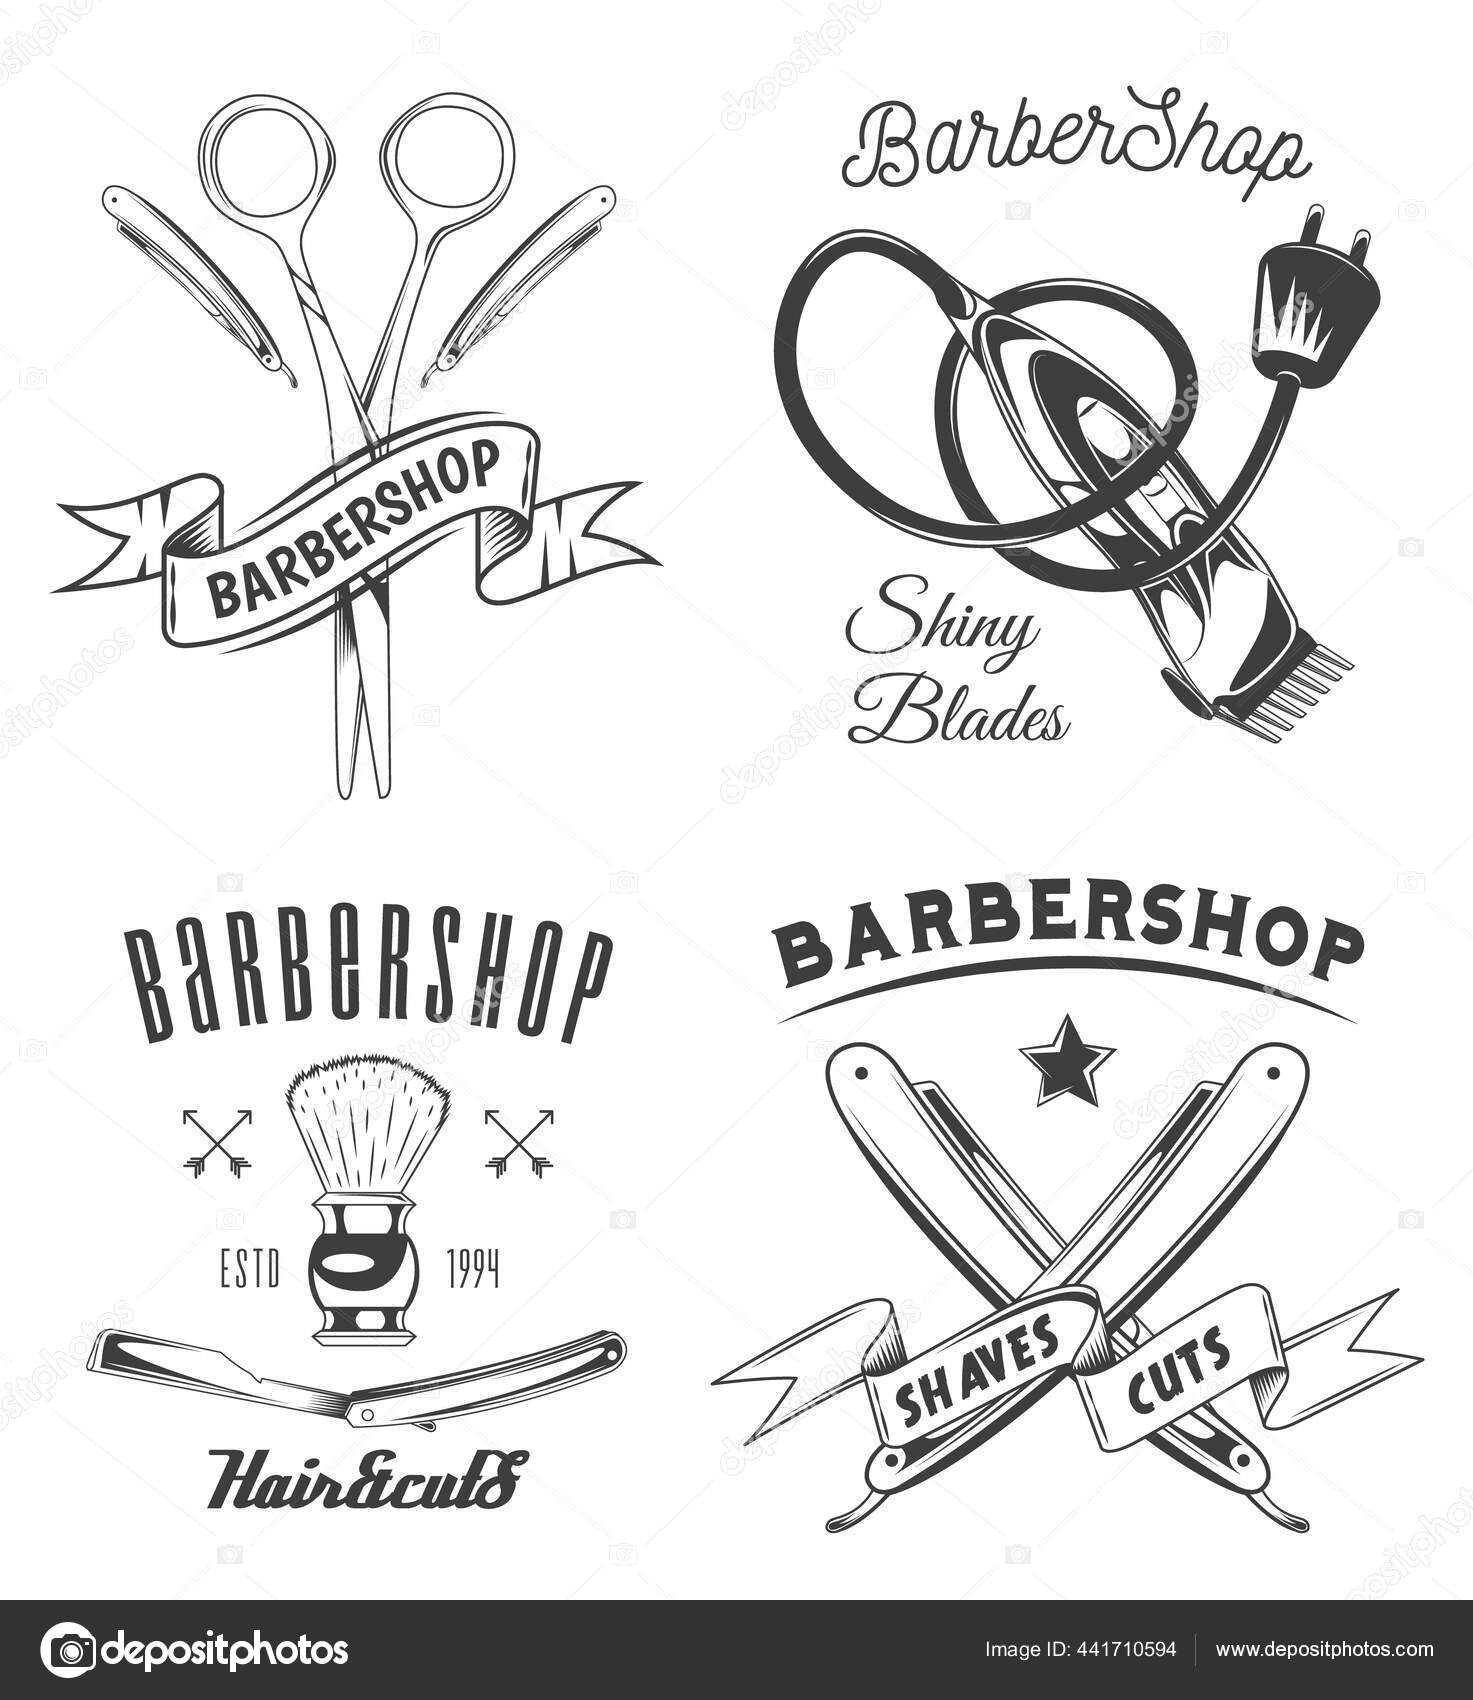 Letrero de barbería, decoración de peluquería, accesorios de peluquería,  decoración de barbería, decoración de barbería, letrero de barbería,  letreros